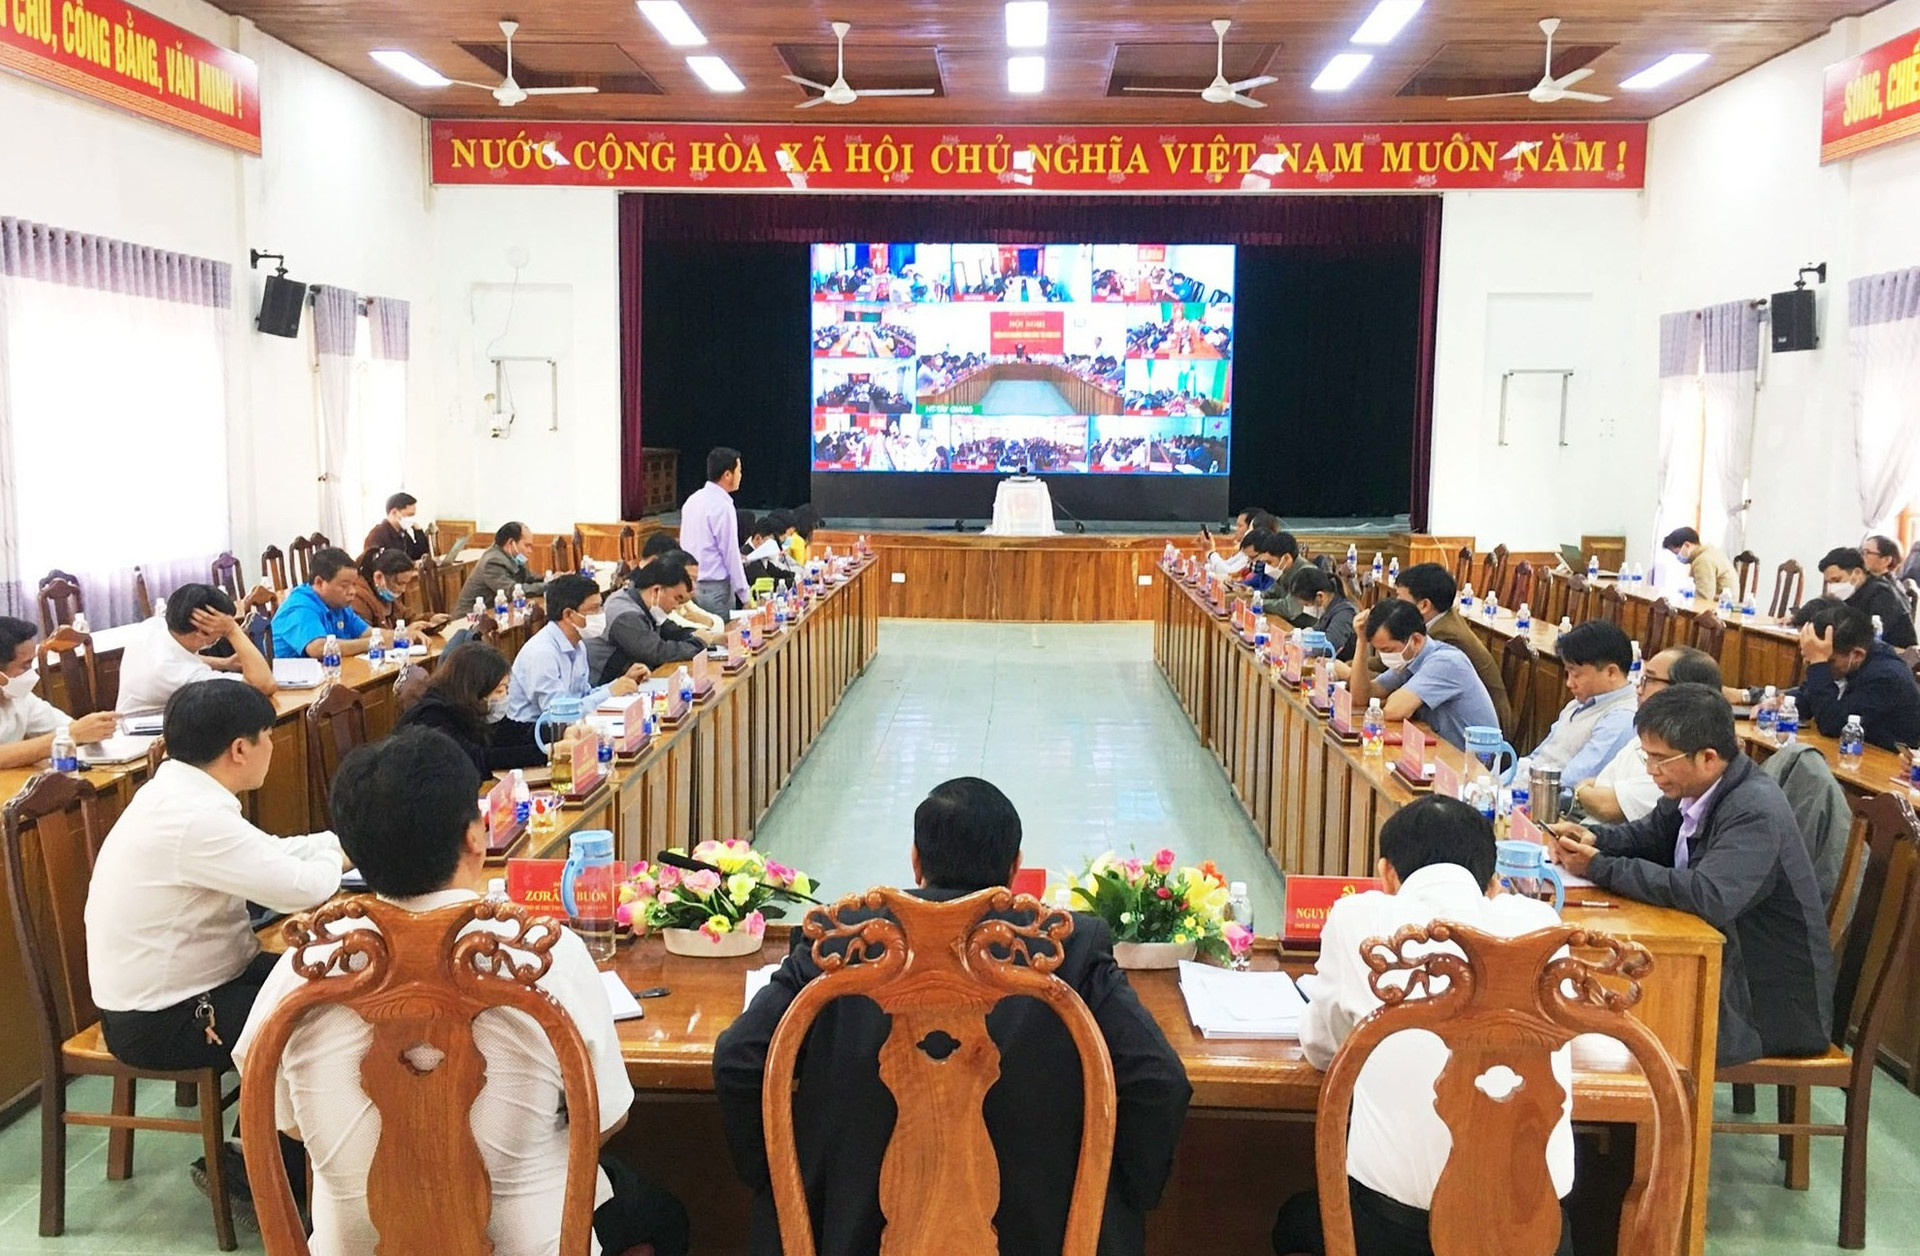 Quang cảnh buổi họp trực tuyến đầu tiên tại điểm cầu Huyện ủy Tây Giang. Ảnh: H.T